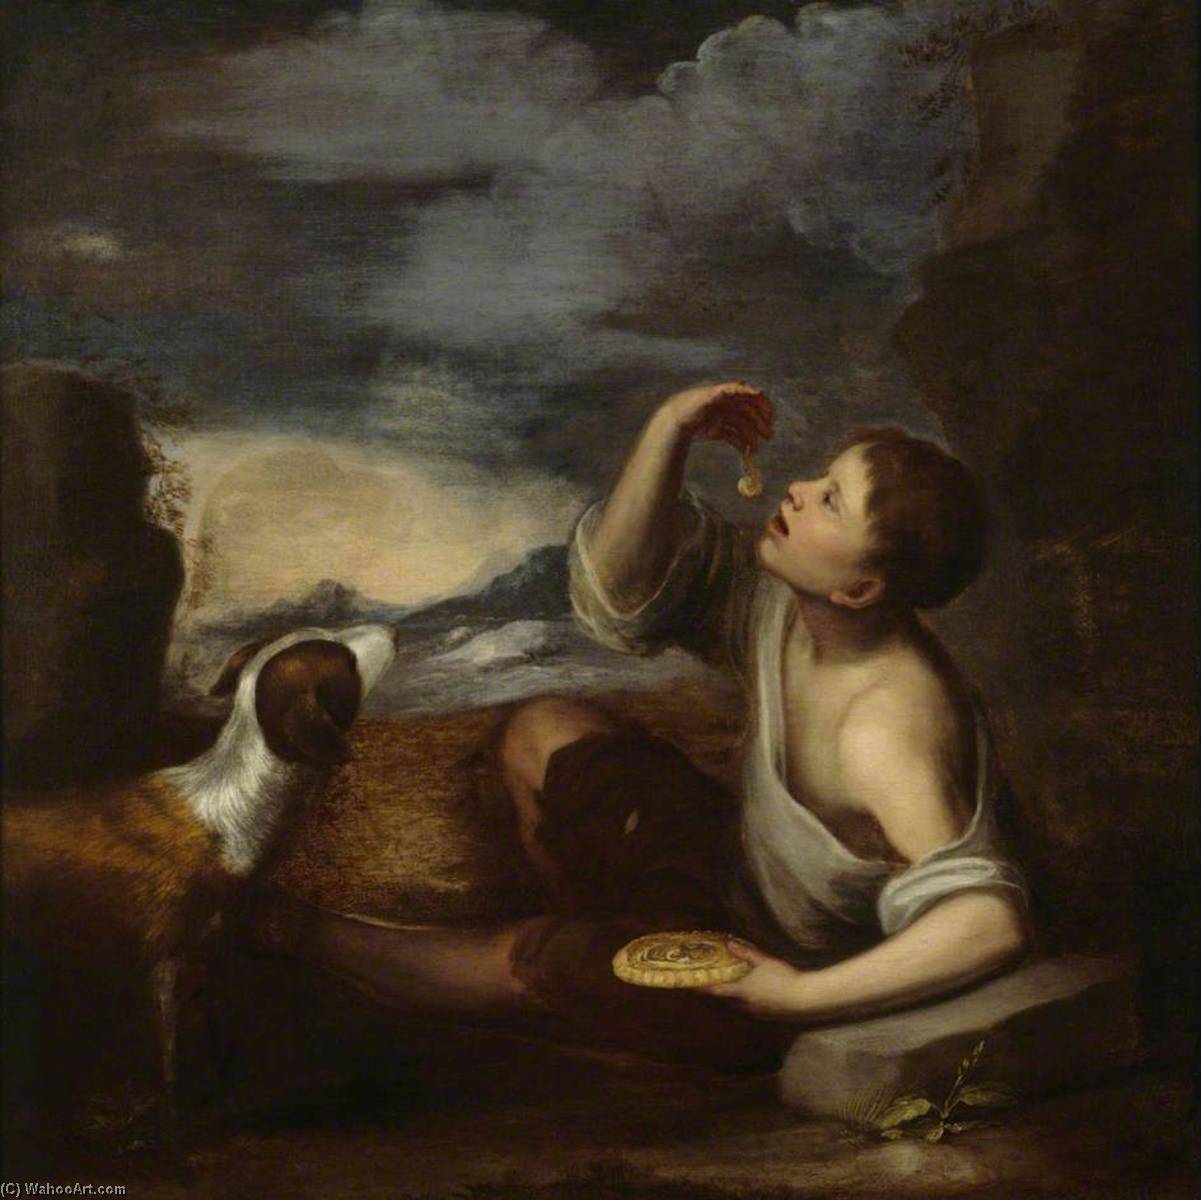 Мурильо. Бартоломе Эстебан Мурильо. Мурильо, Эстебан Бартоломе (испанский художник; 1618-1682). Бартоломе Эстебан Мурильо дети. Бартоломе Мурильо (1617–1682).